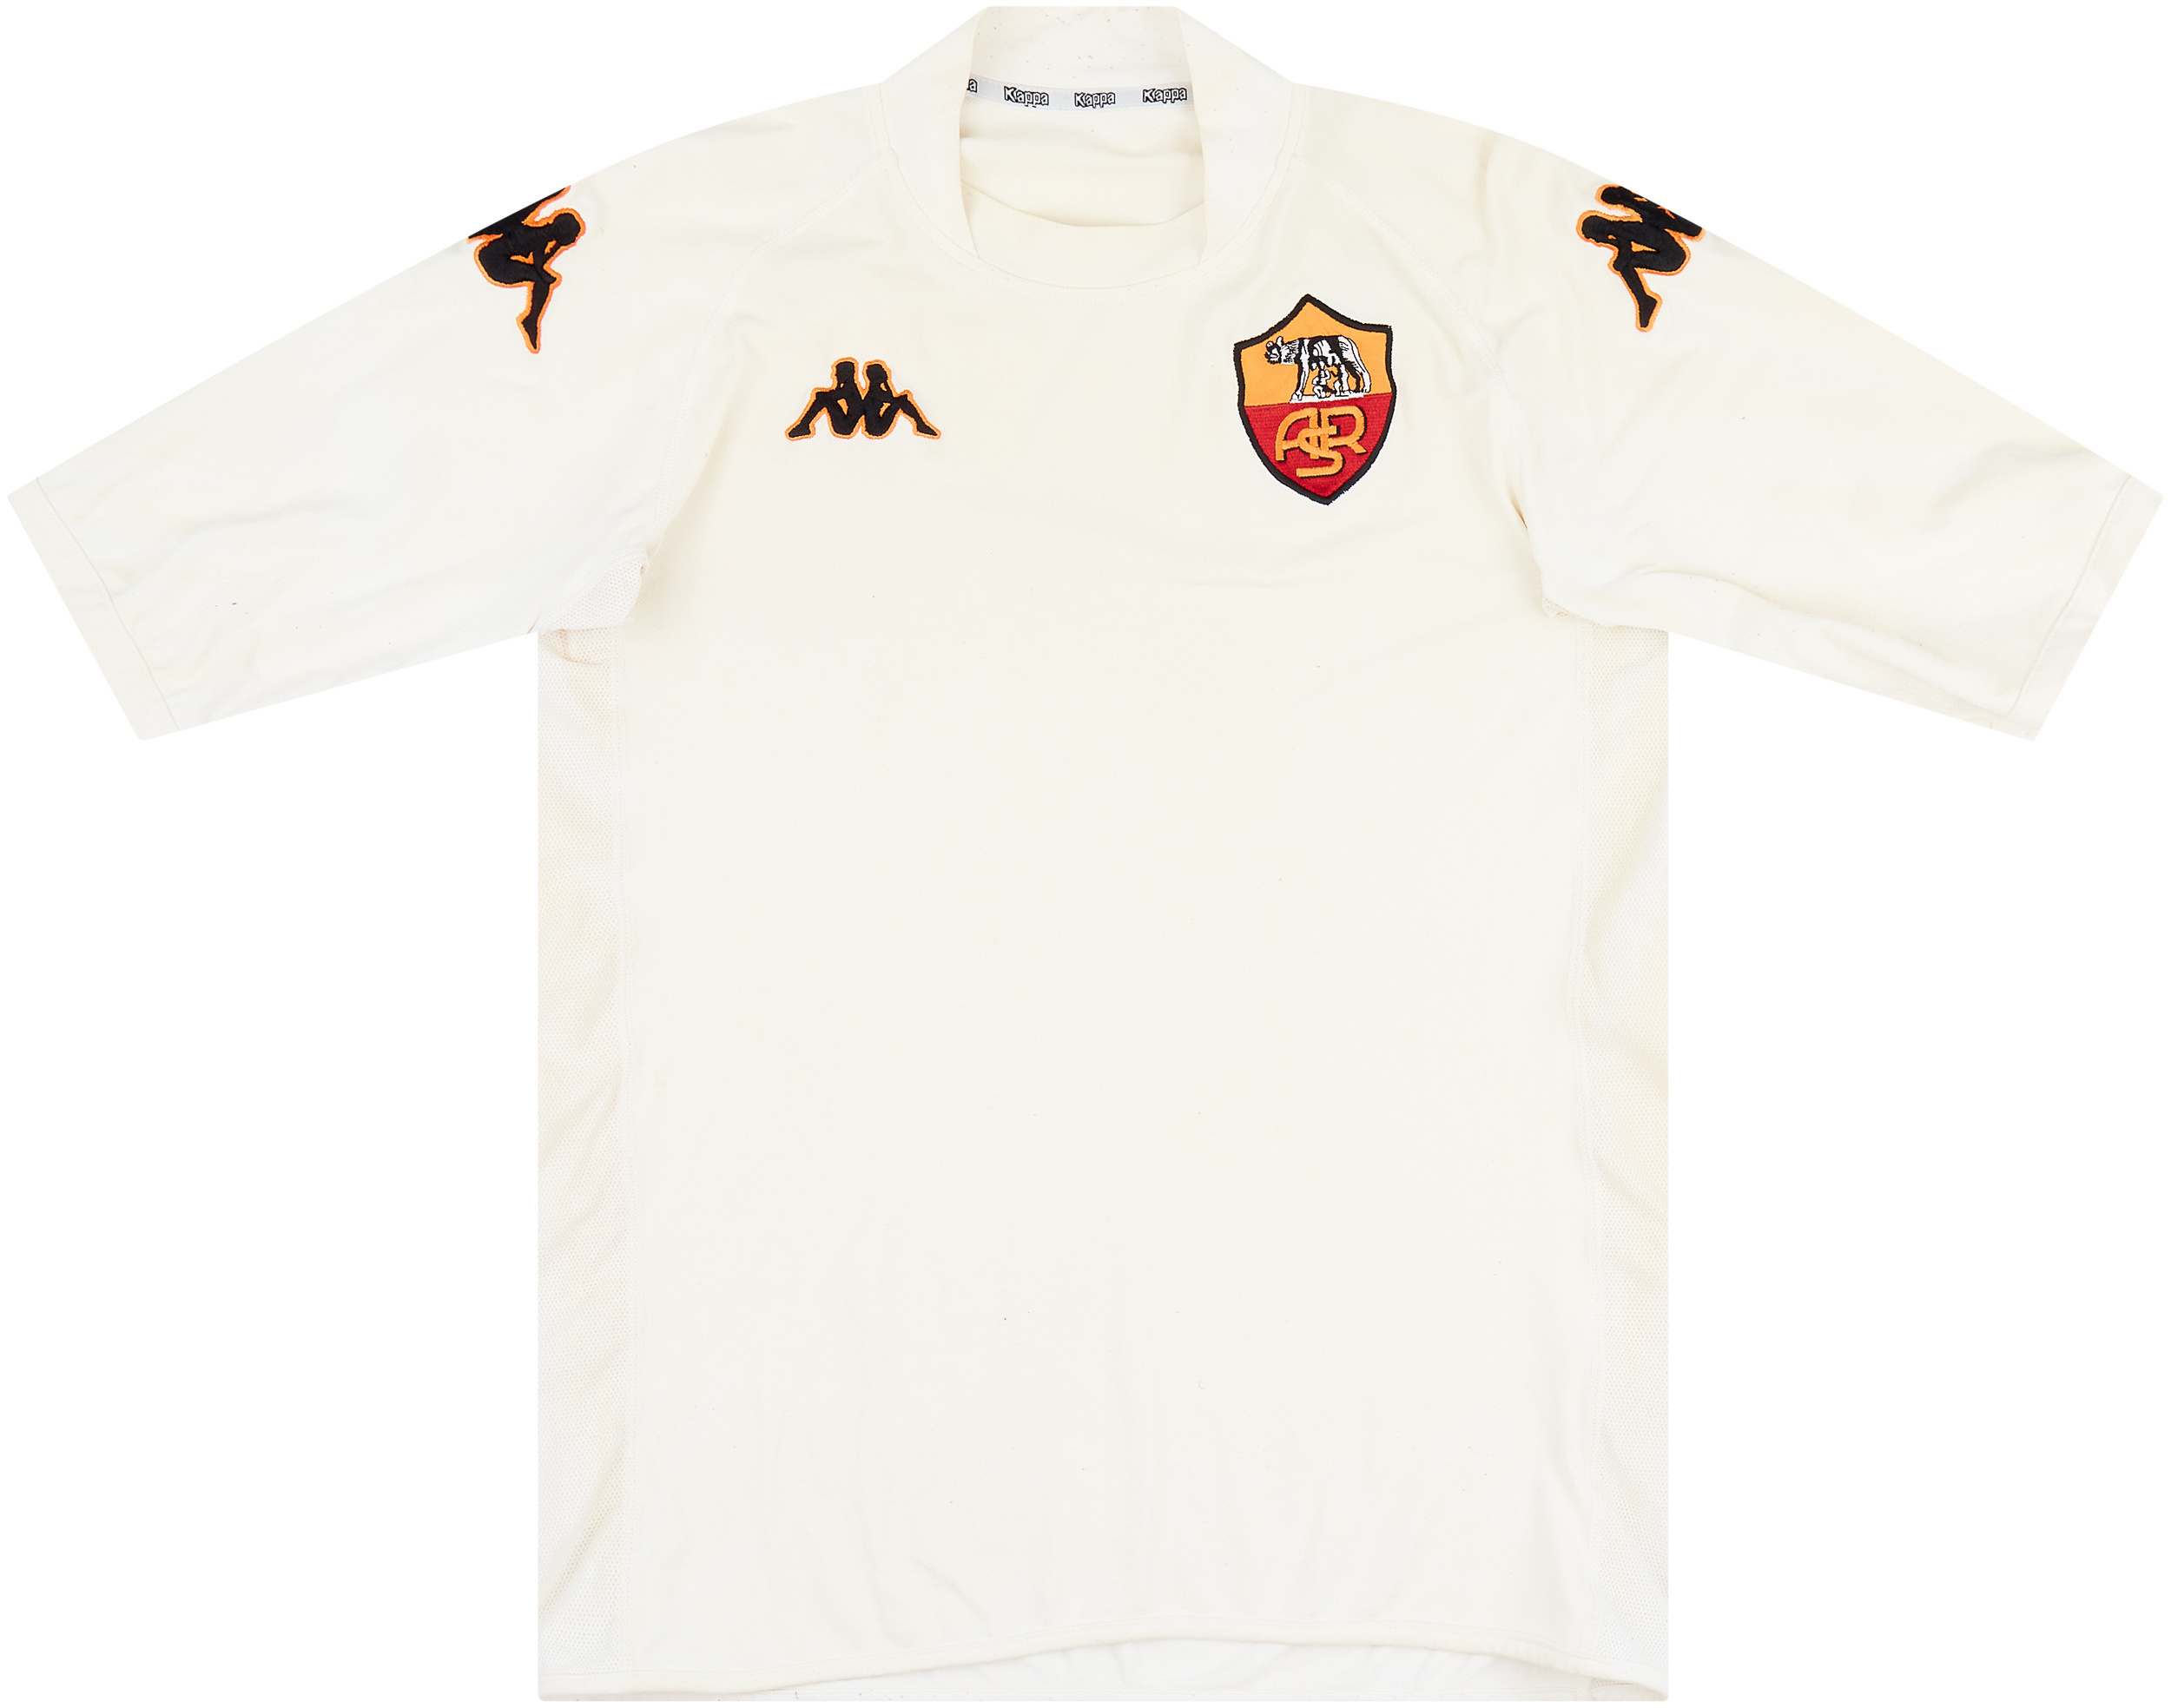 2002-03 Roma Away Shirt - Good 5/10 - (XL)